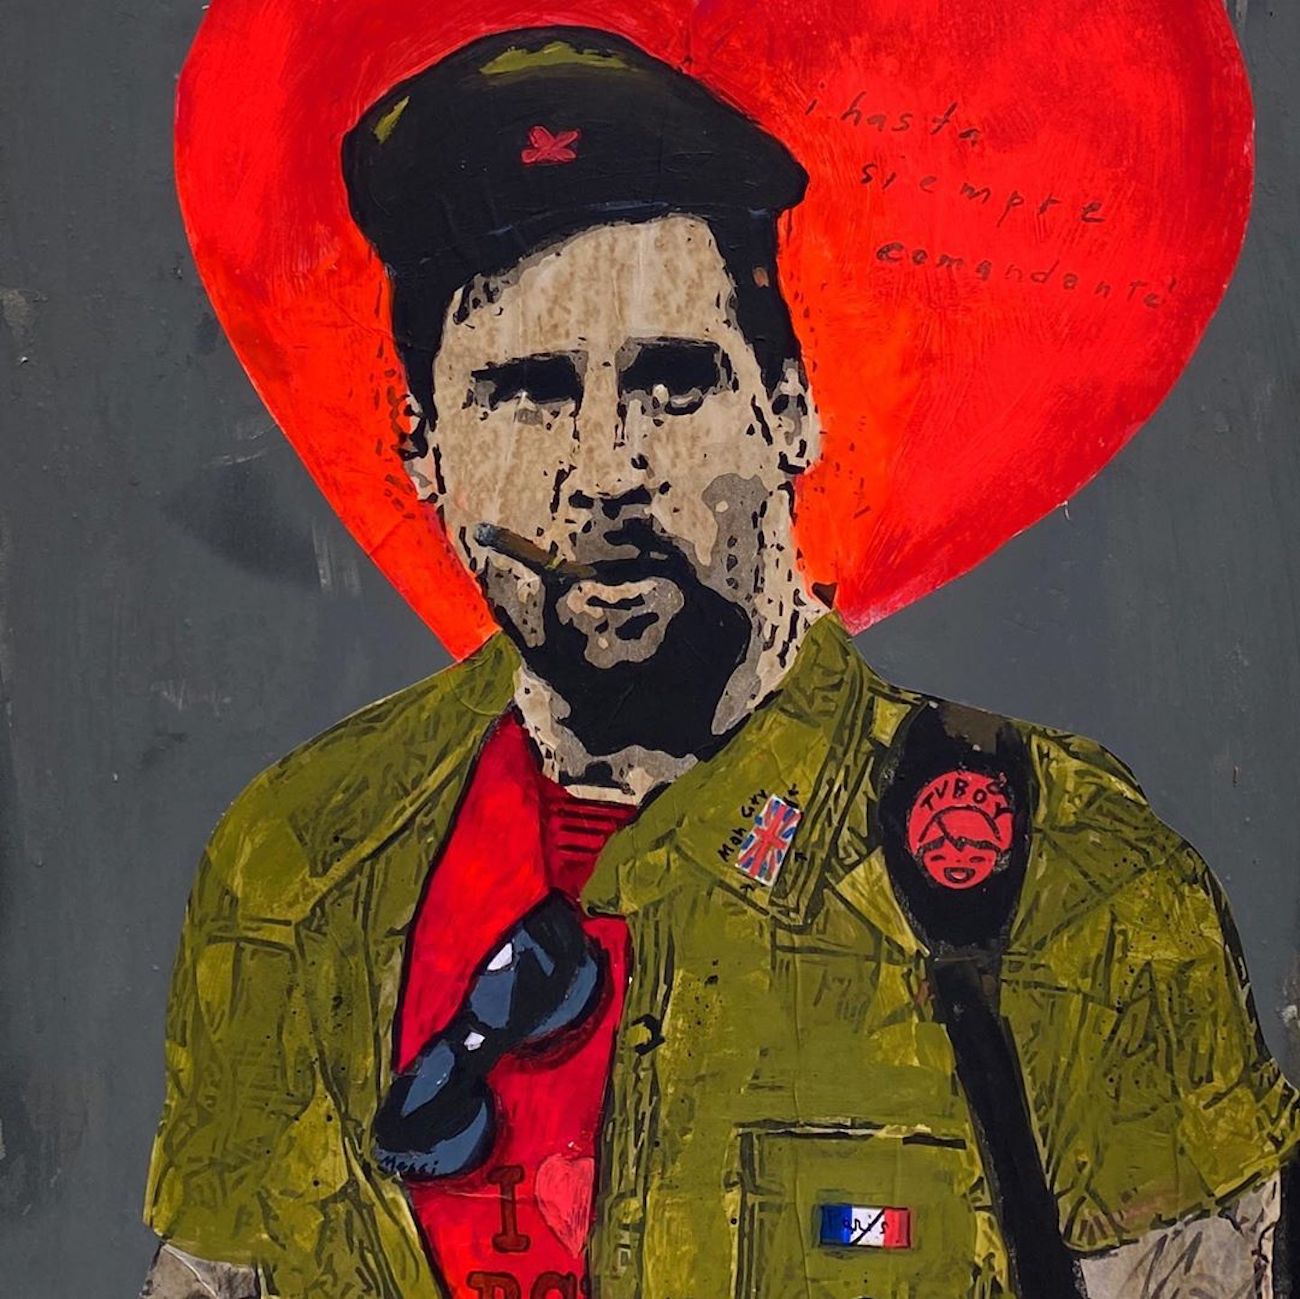 FOTOS | L'artista TVBoy homenatja Messi vestint-lo de Che Guevara a Barcelona